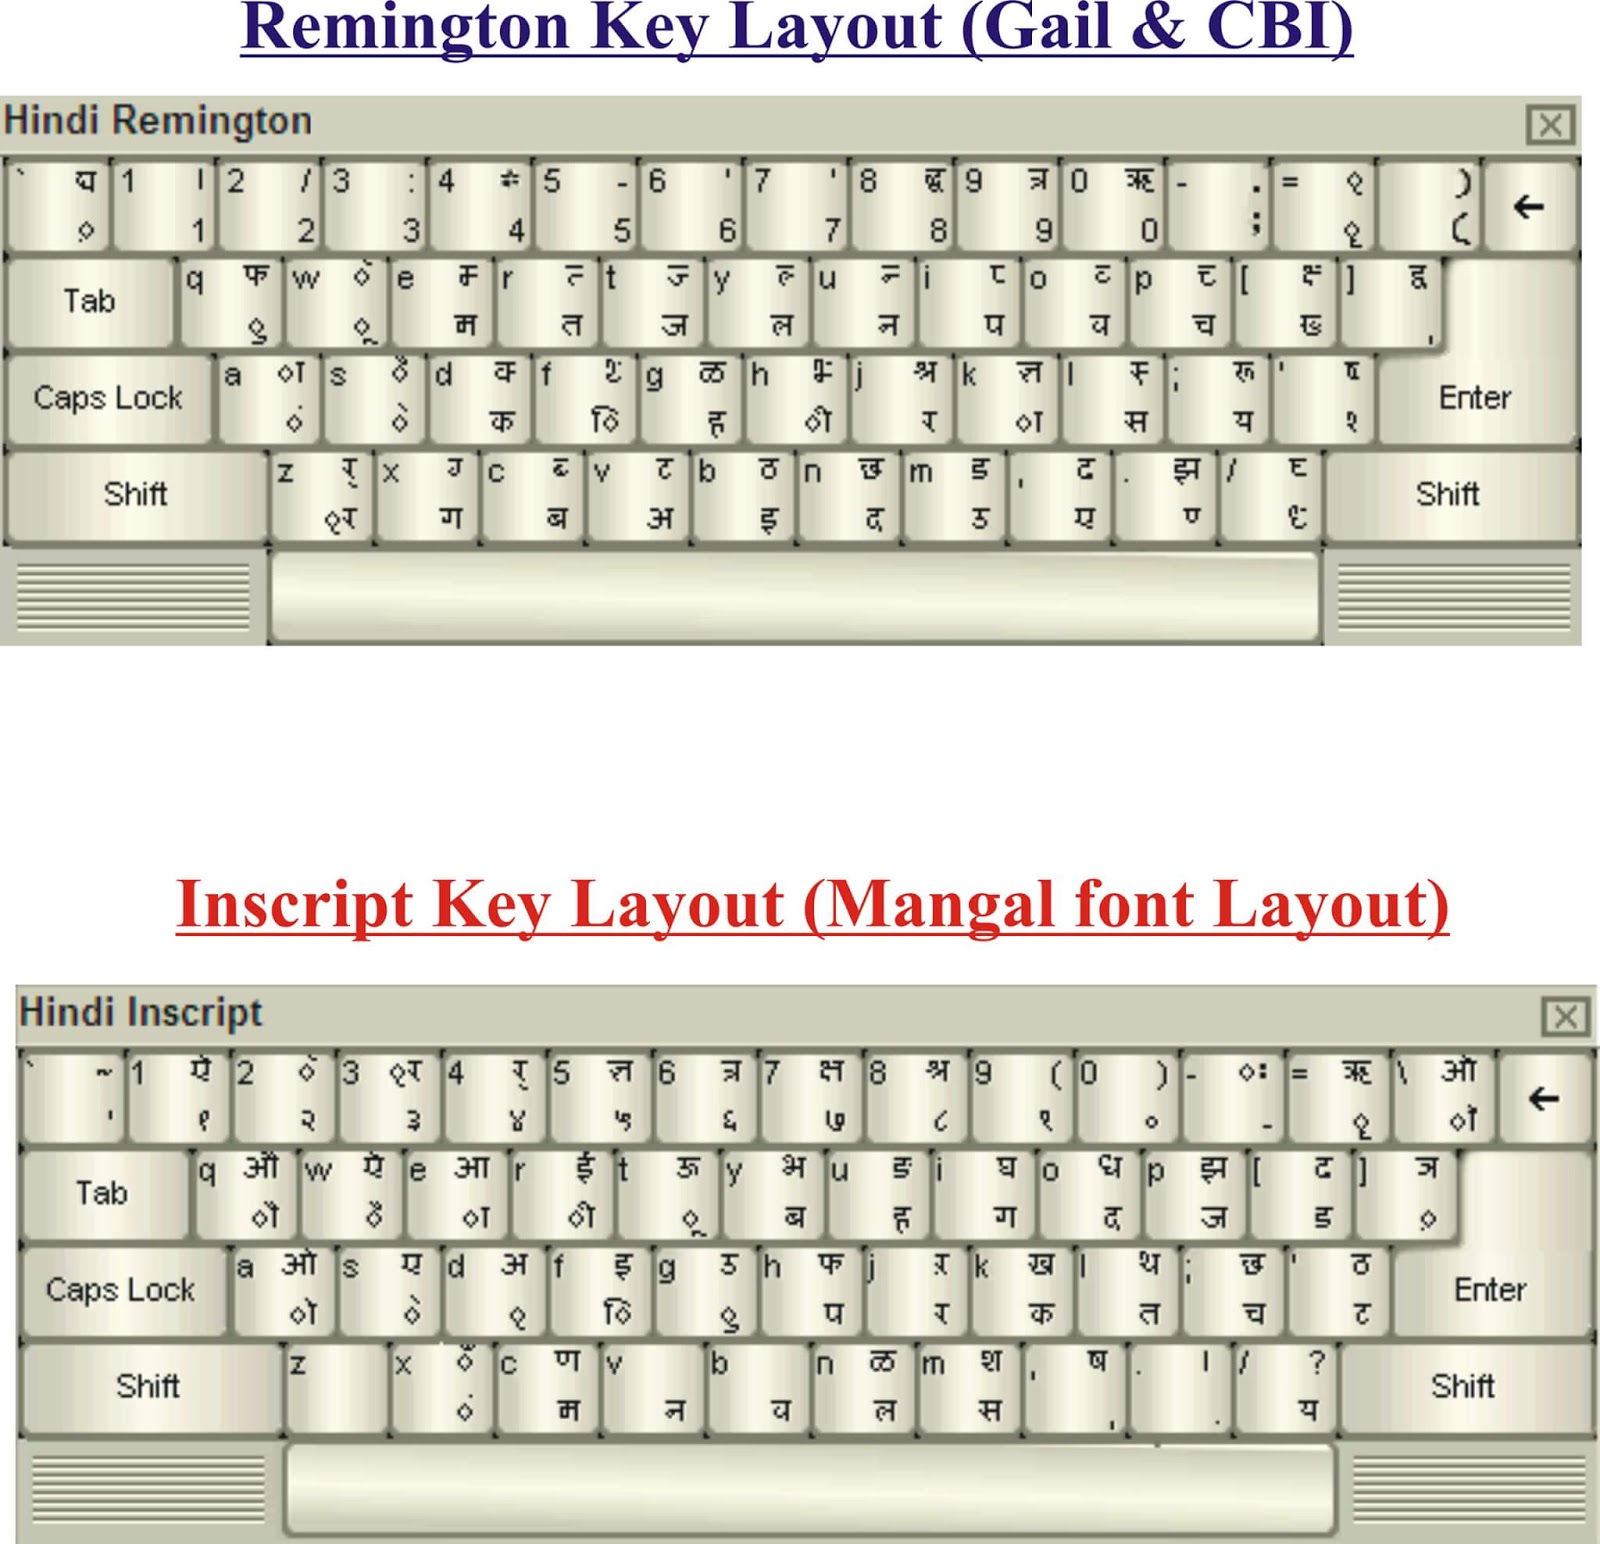 Mangal marathi font keyboard image